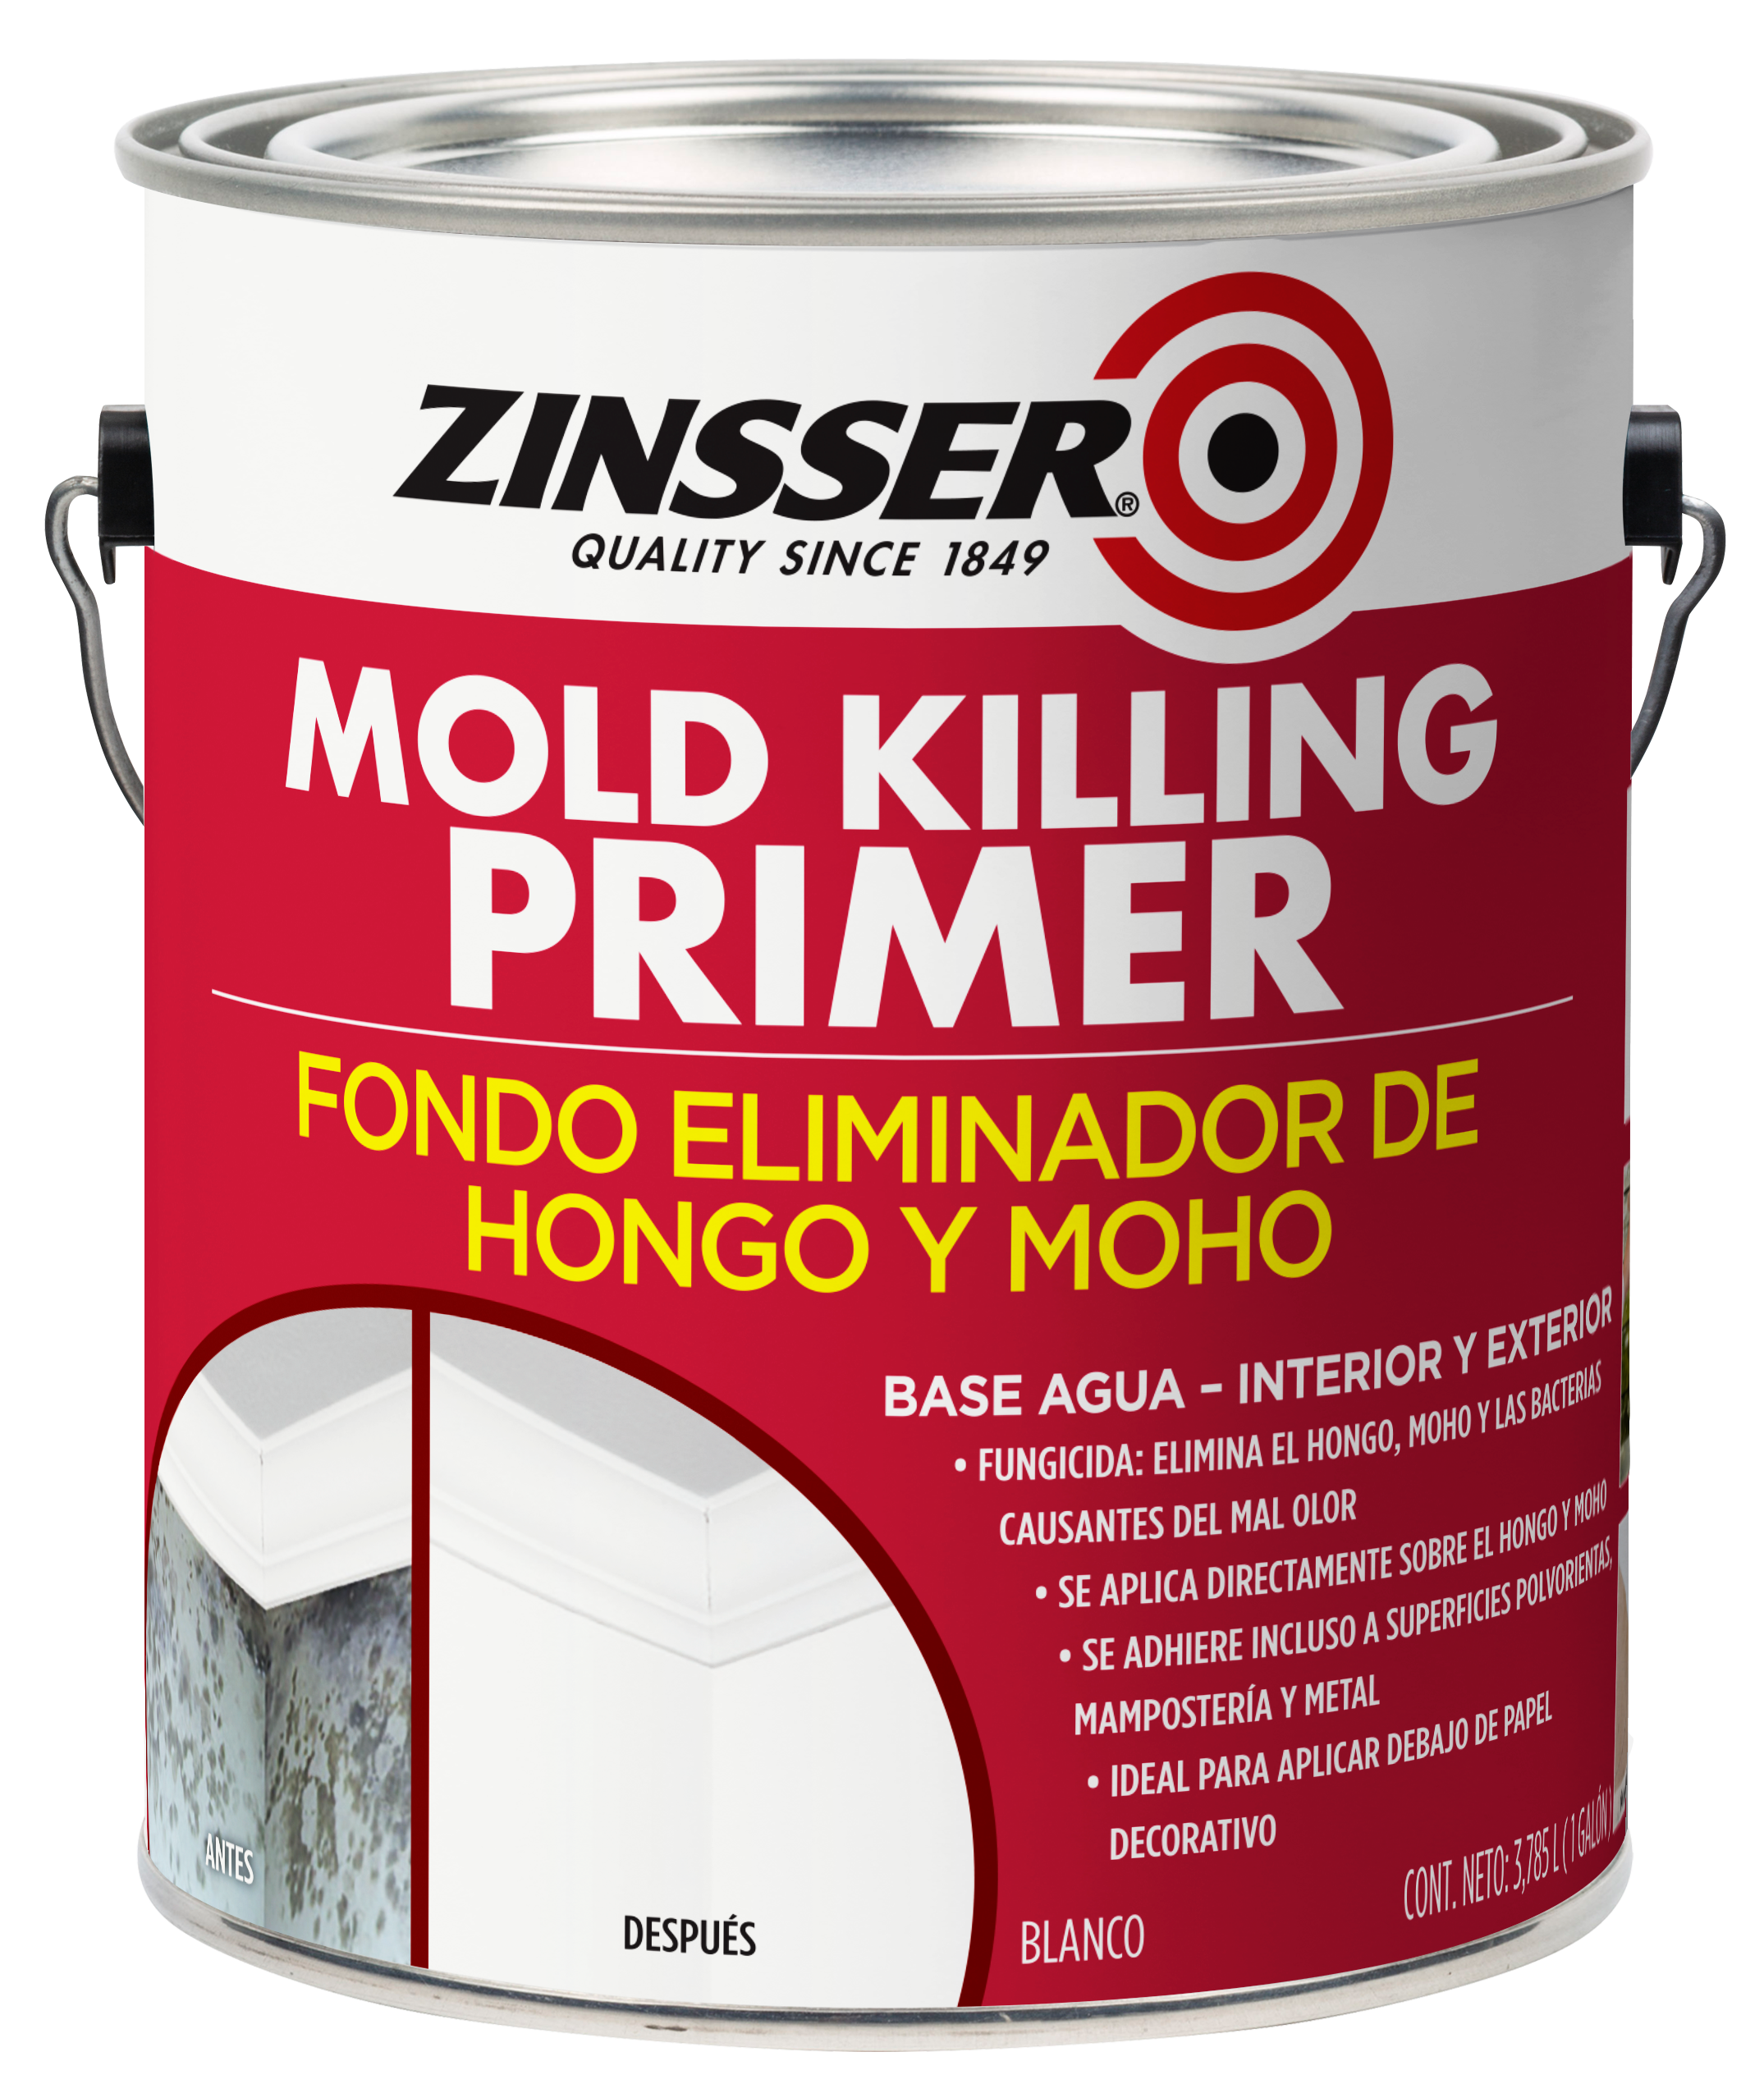 Galón Mold Killing Primer Zinsser (fondo Eliminador Hongo Y Moho